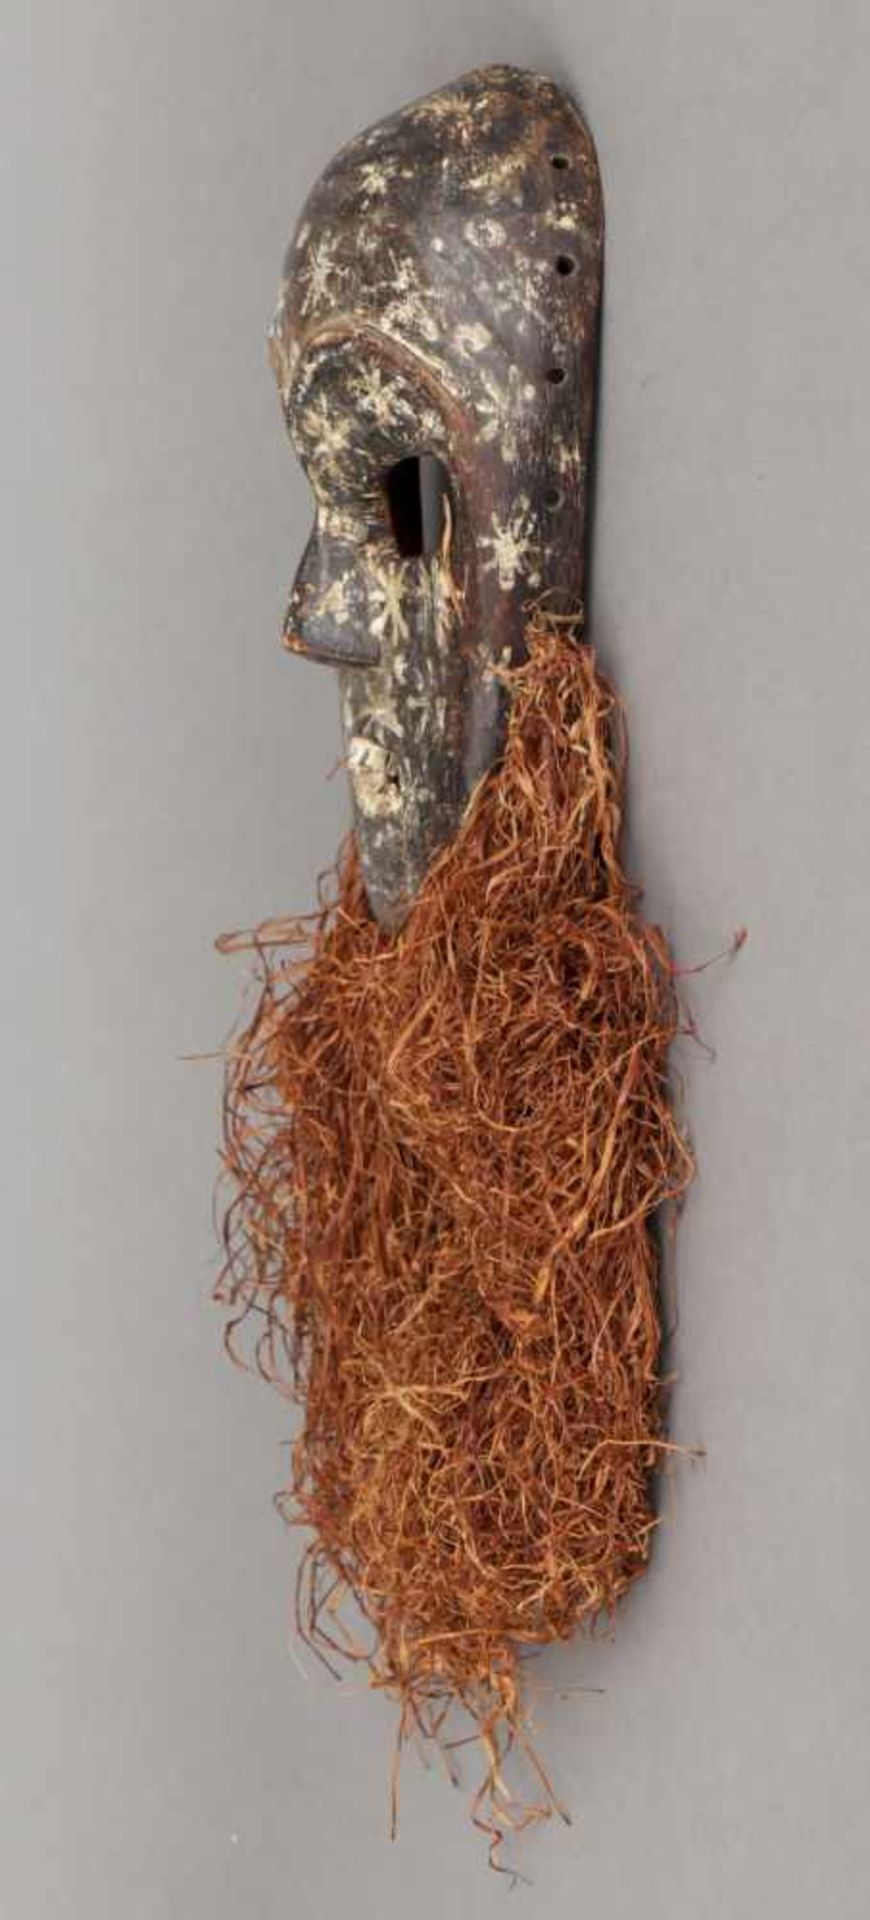 Afrikanische Tanzmaske der Lega, Kongo dunkles Holz mit weißem Sterndekor, Rafia-Bart, offener Mund - Bild 2 aus 2